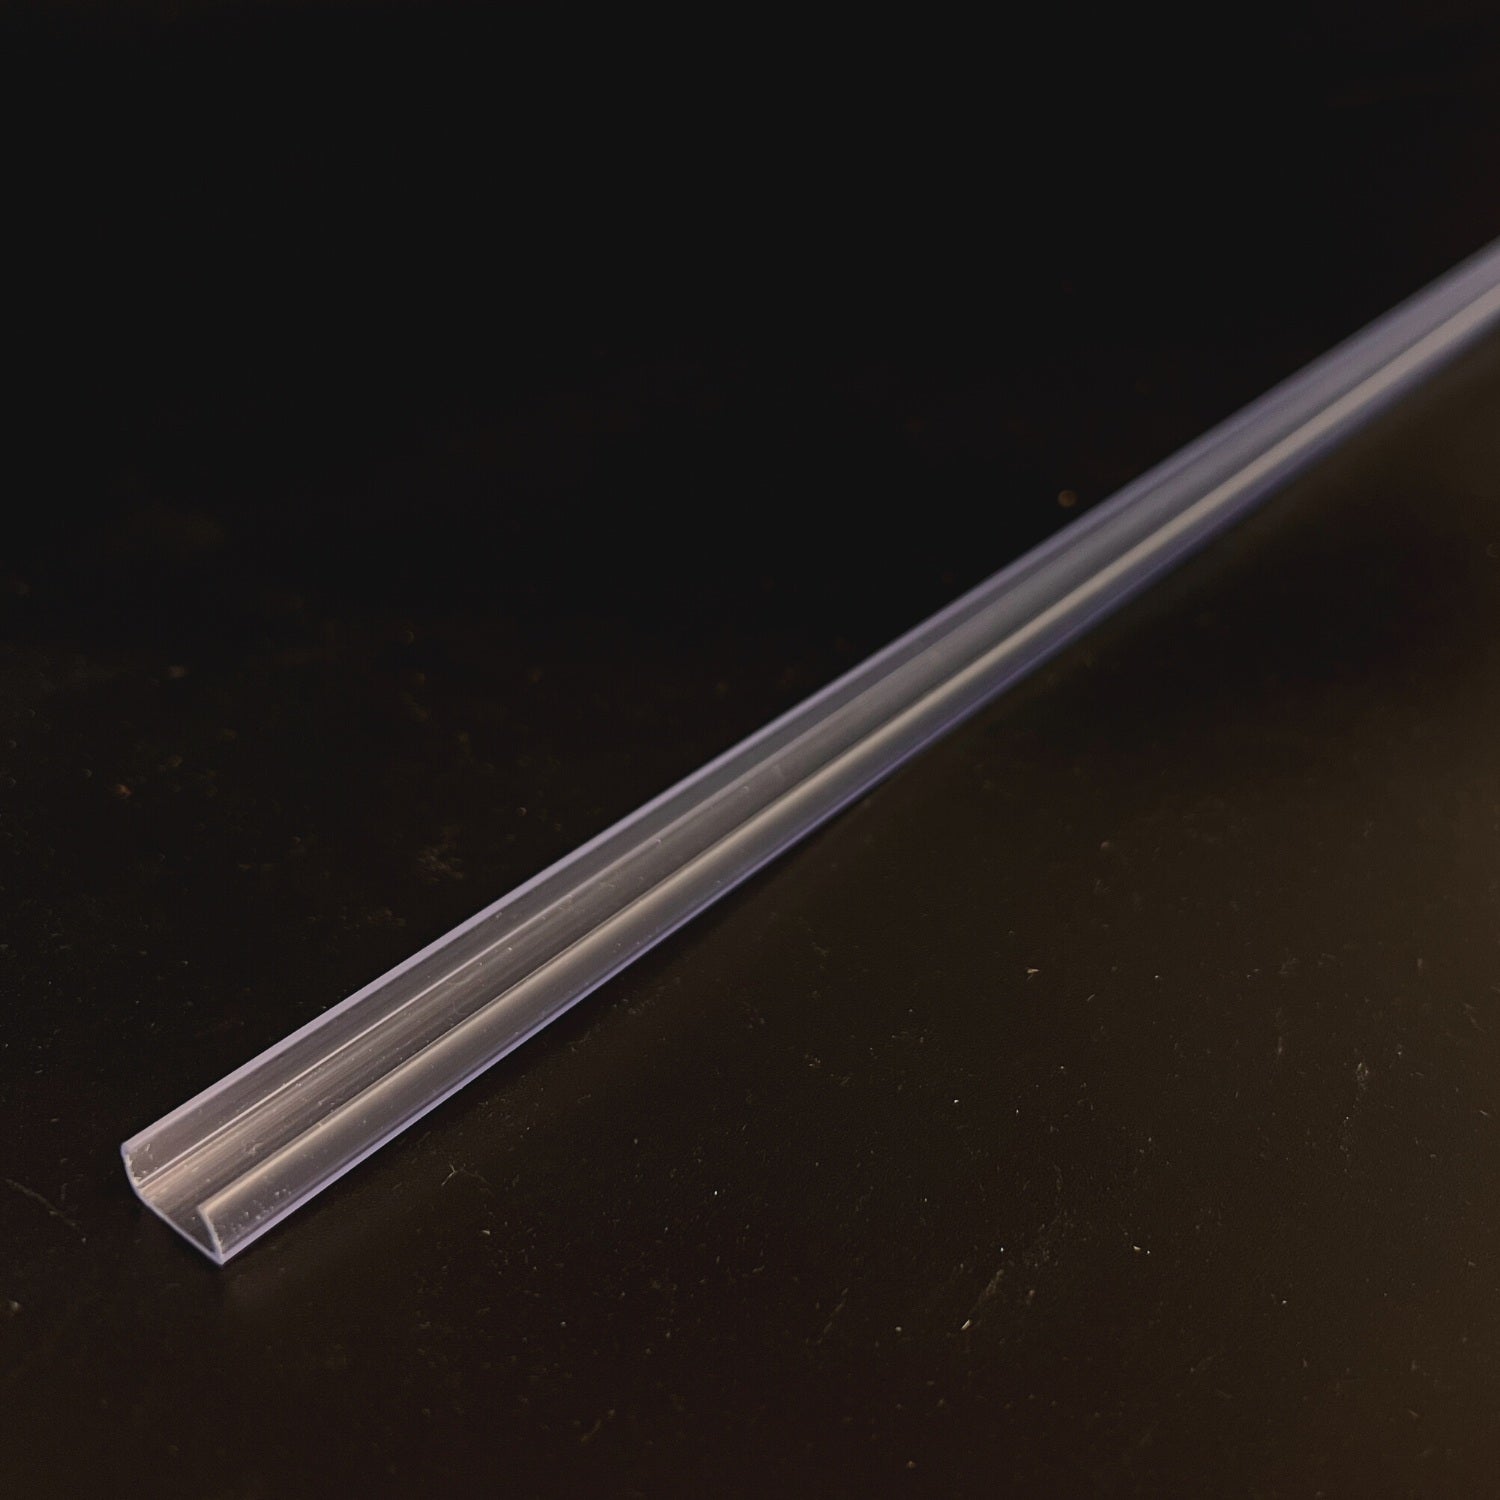 COB LED Strip Clear PVC Plastic Profile 1 Metre - ATOM LED